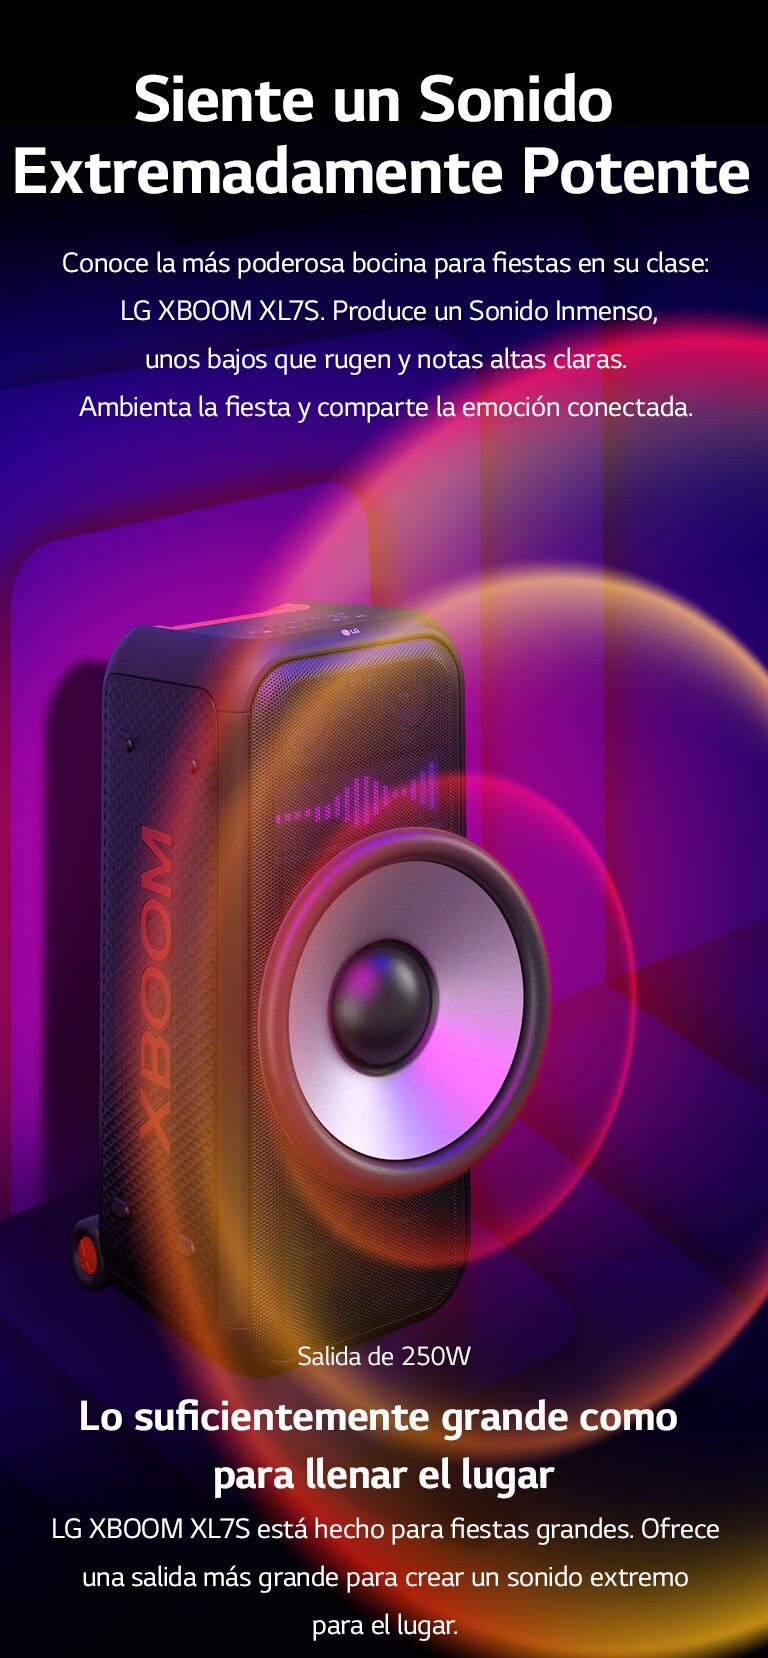 LG XBOOM XL7S se coloca en el espacio infinito. En la pared, se ilustran gráficos de sonido cuadrados. En el medio del parlante, se amplía un woofer gigante de 8 pulgadas para enfatizar su gran sonido de 250W. Las ondas de sonido salen del woofer.